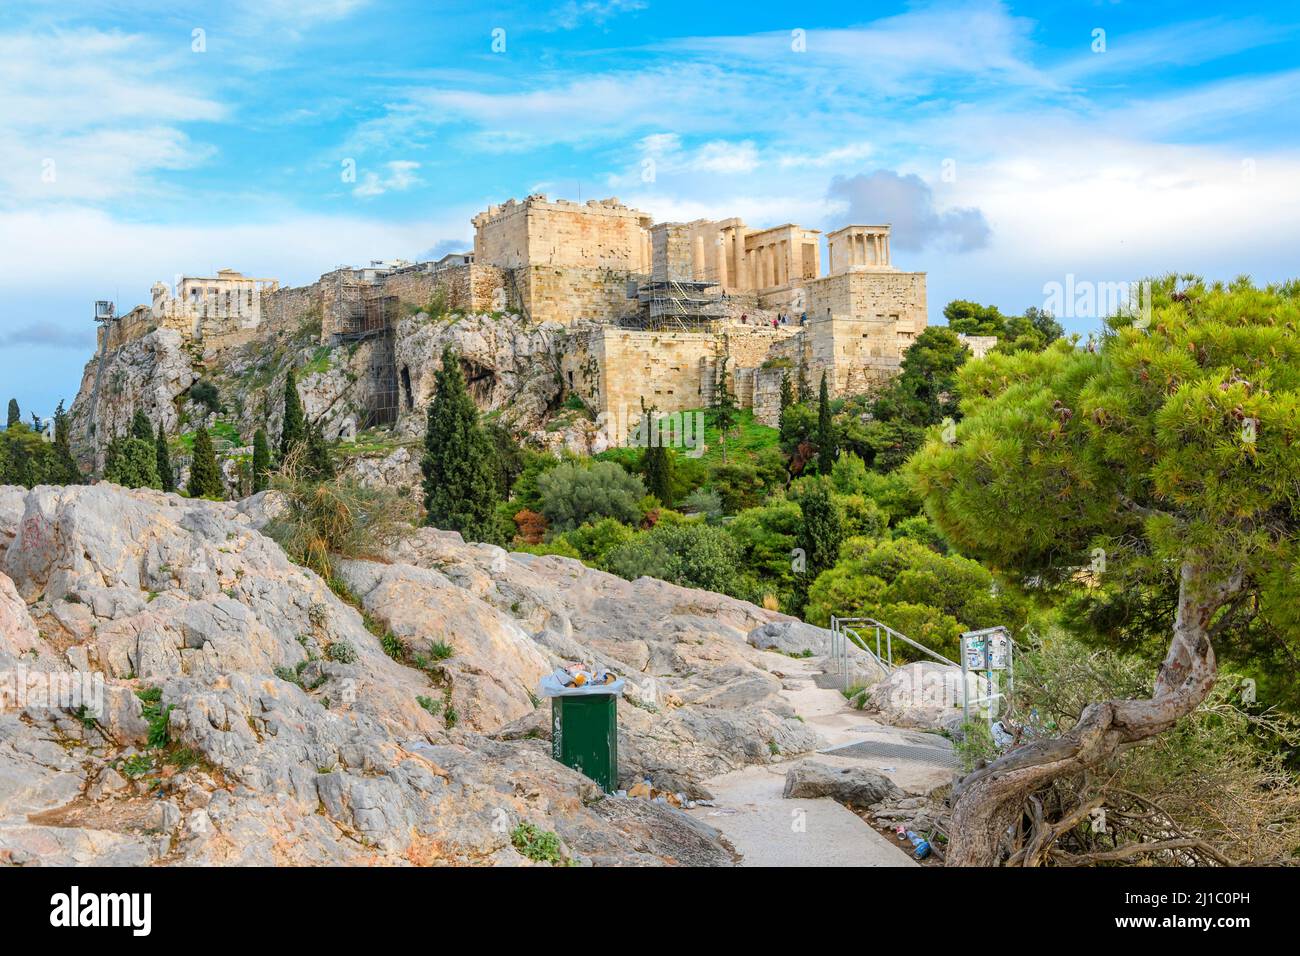 L'antica collina rocciosa di Areopago con l'Acropoli e il Partenone in vista alle spalle. Foto Stock